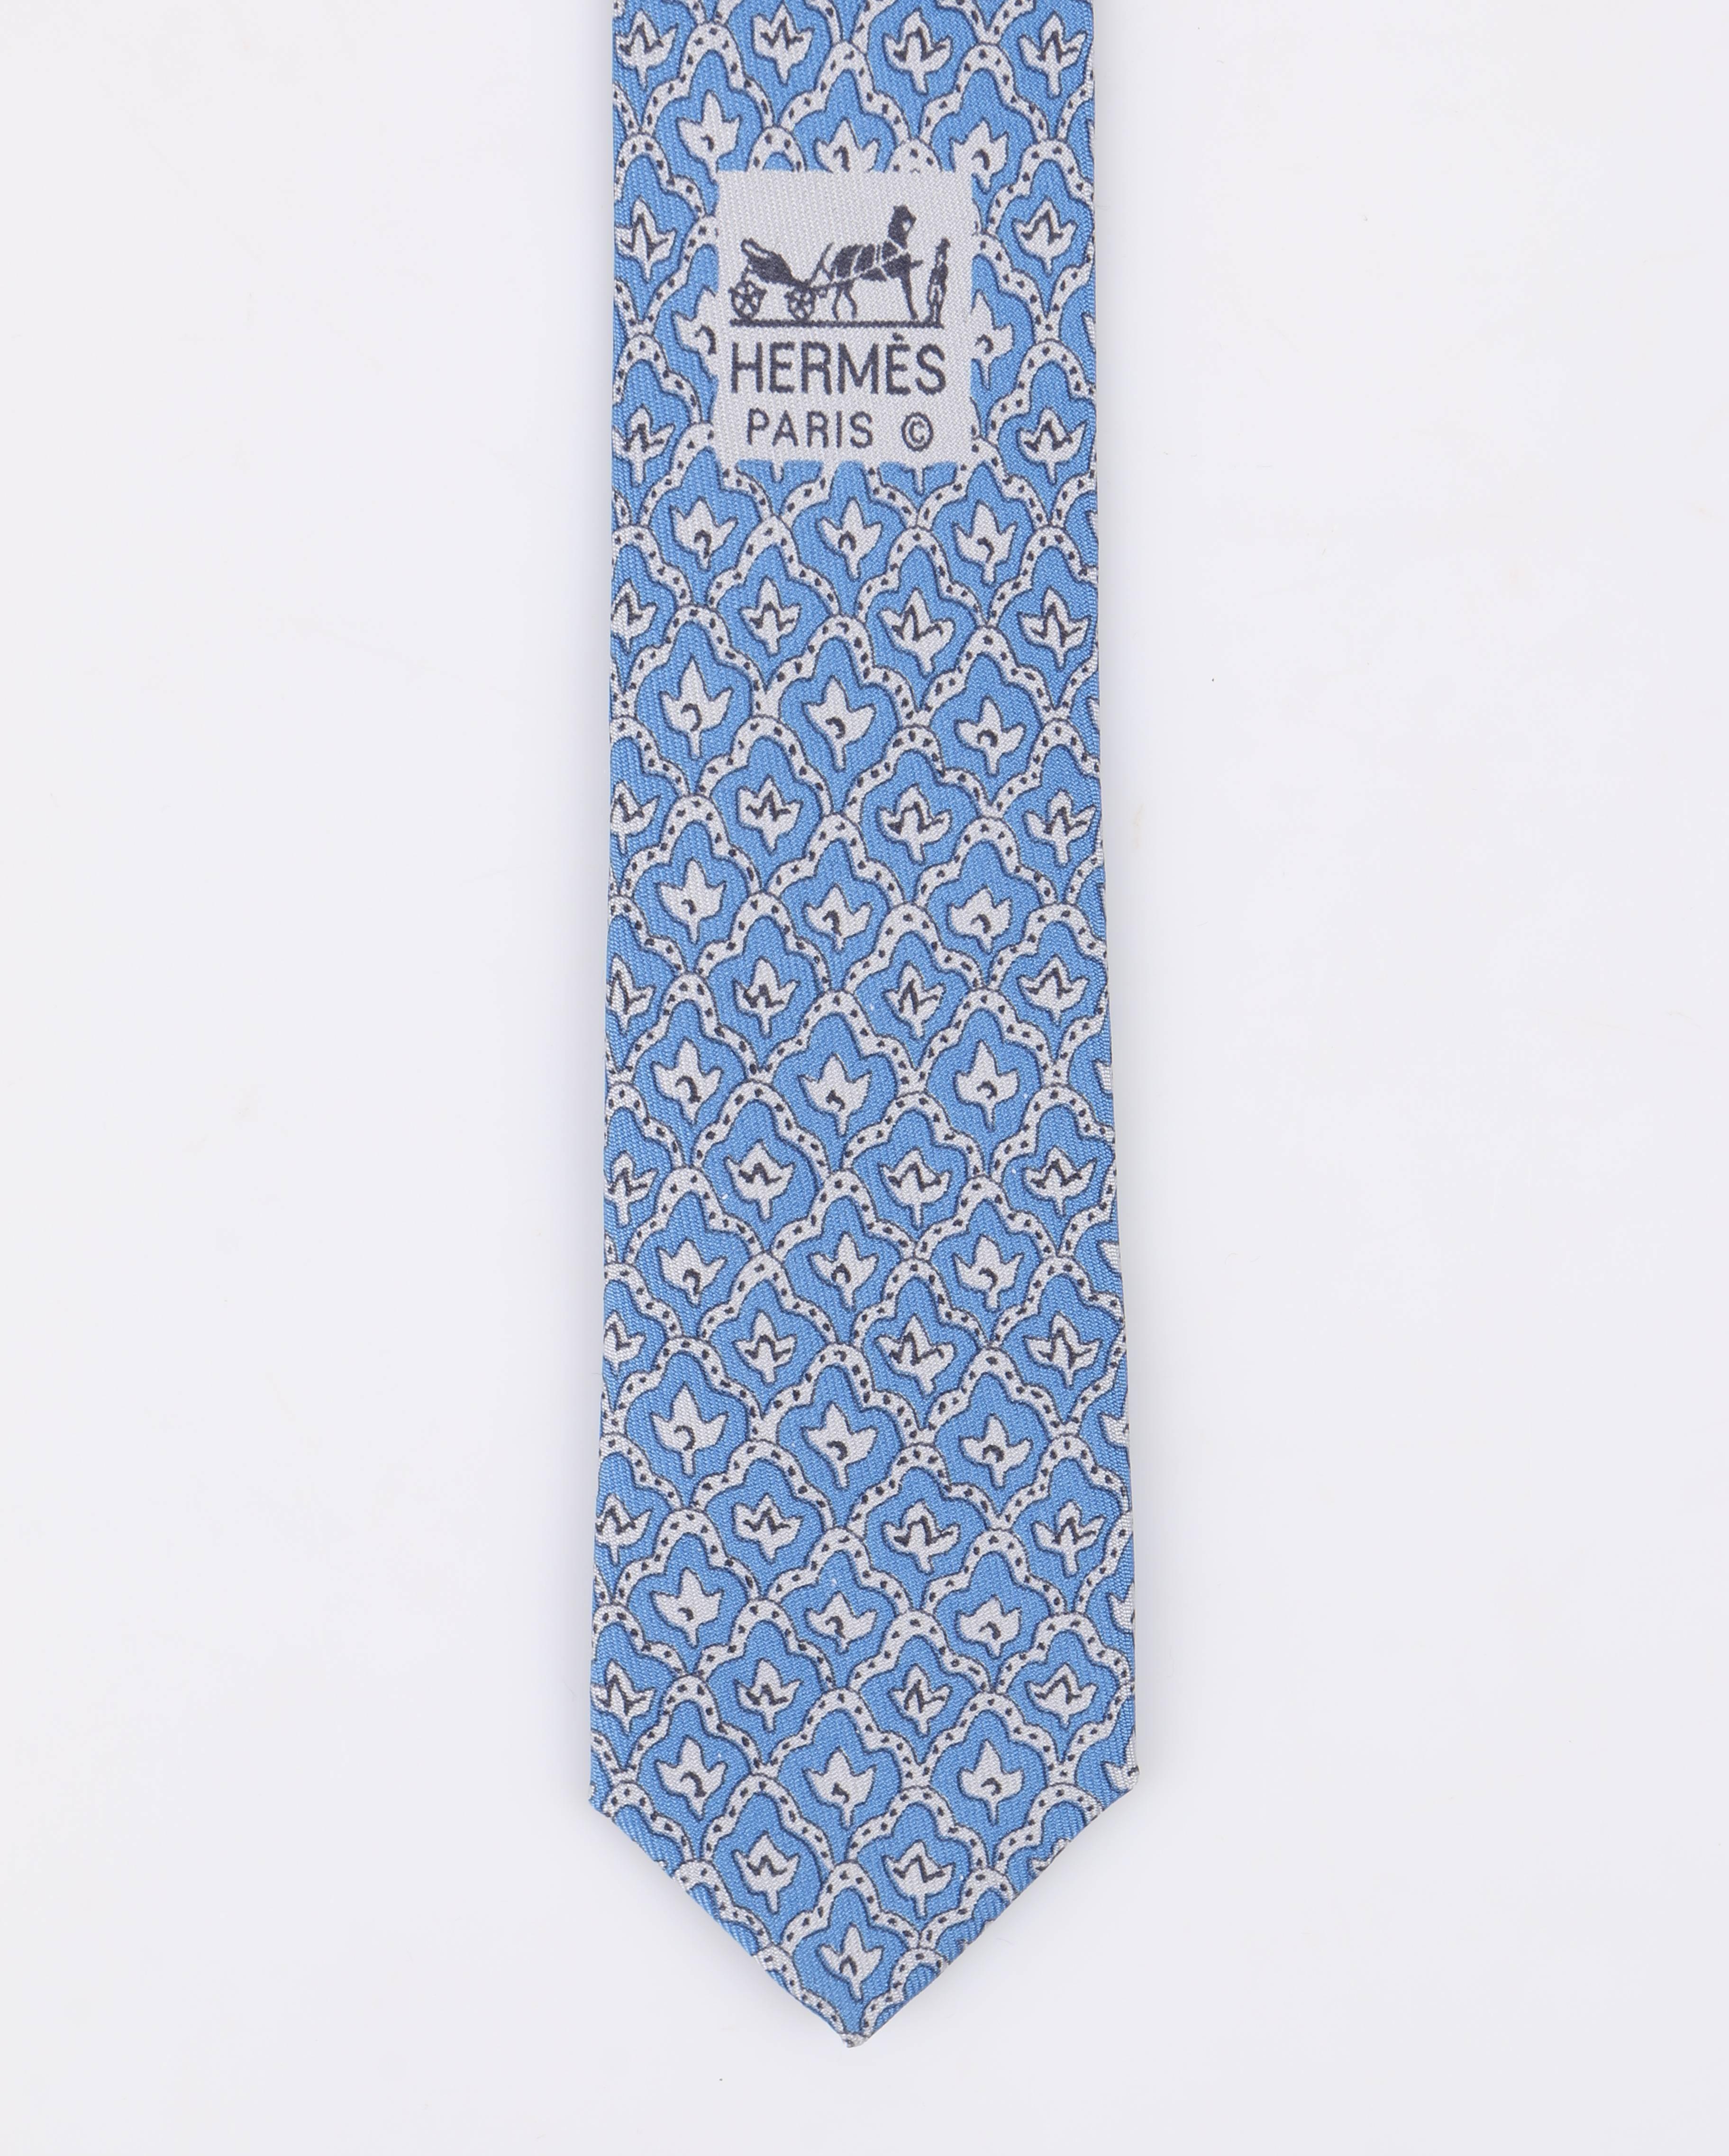 HERMES 5 Fold Cornflower Blue White Diamond Leaf Print Silk Necktie Tie 1